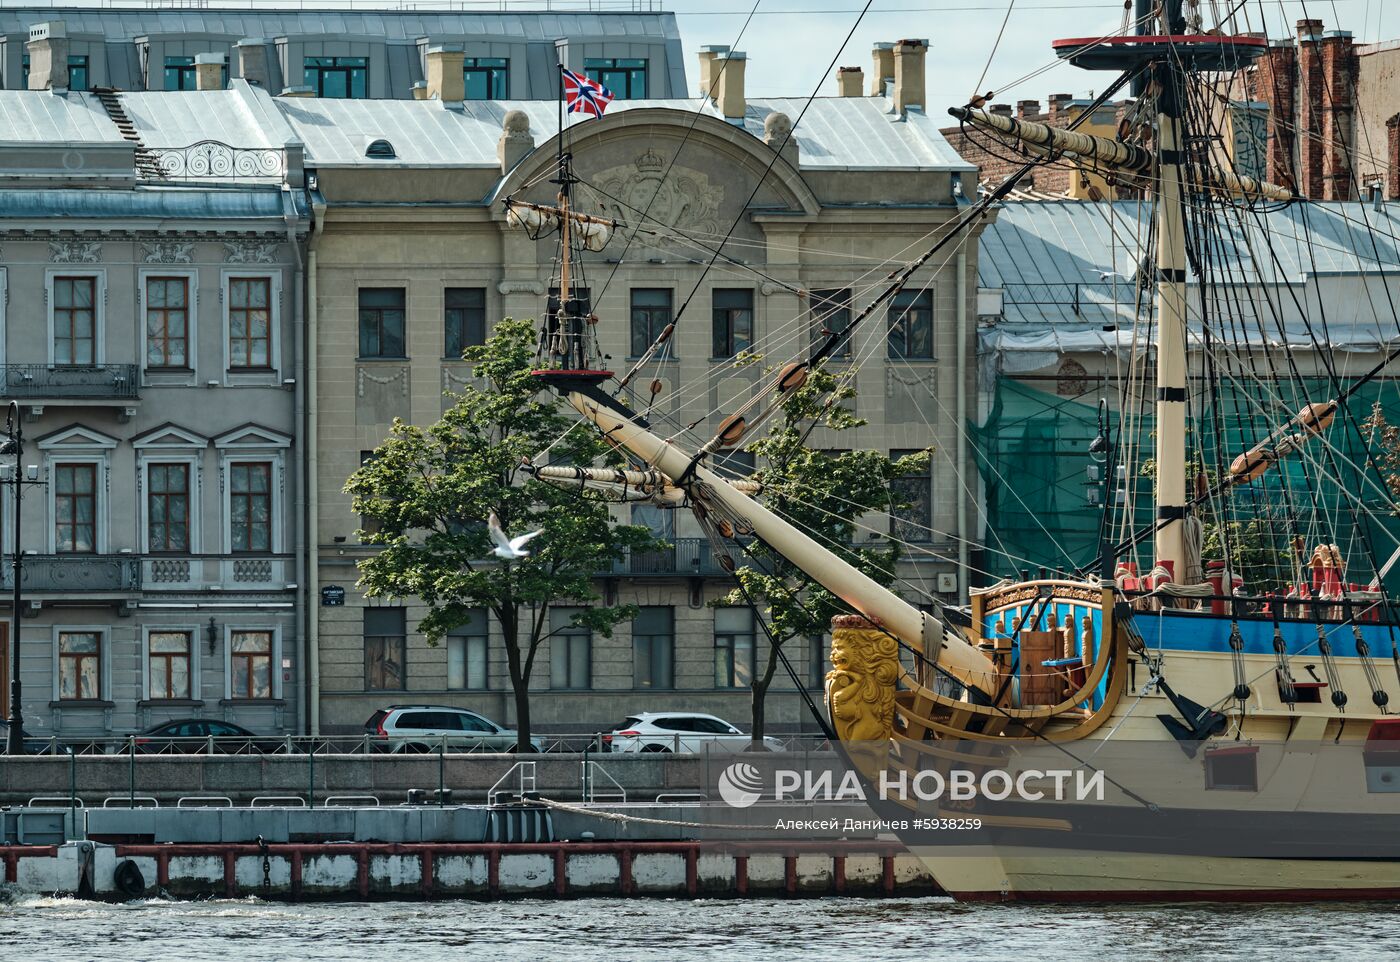 Парусник "Полтава" пришвартовался в центре Петербурга